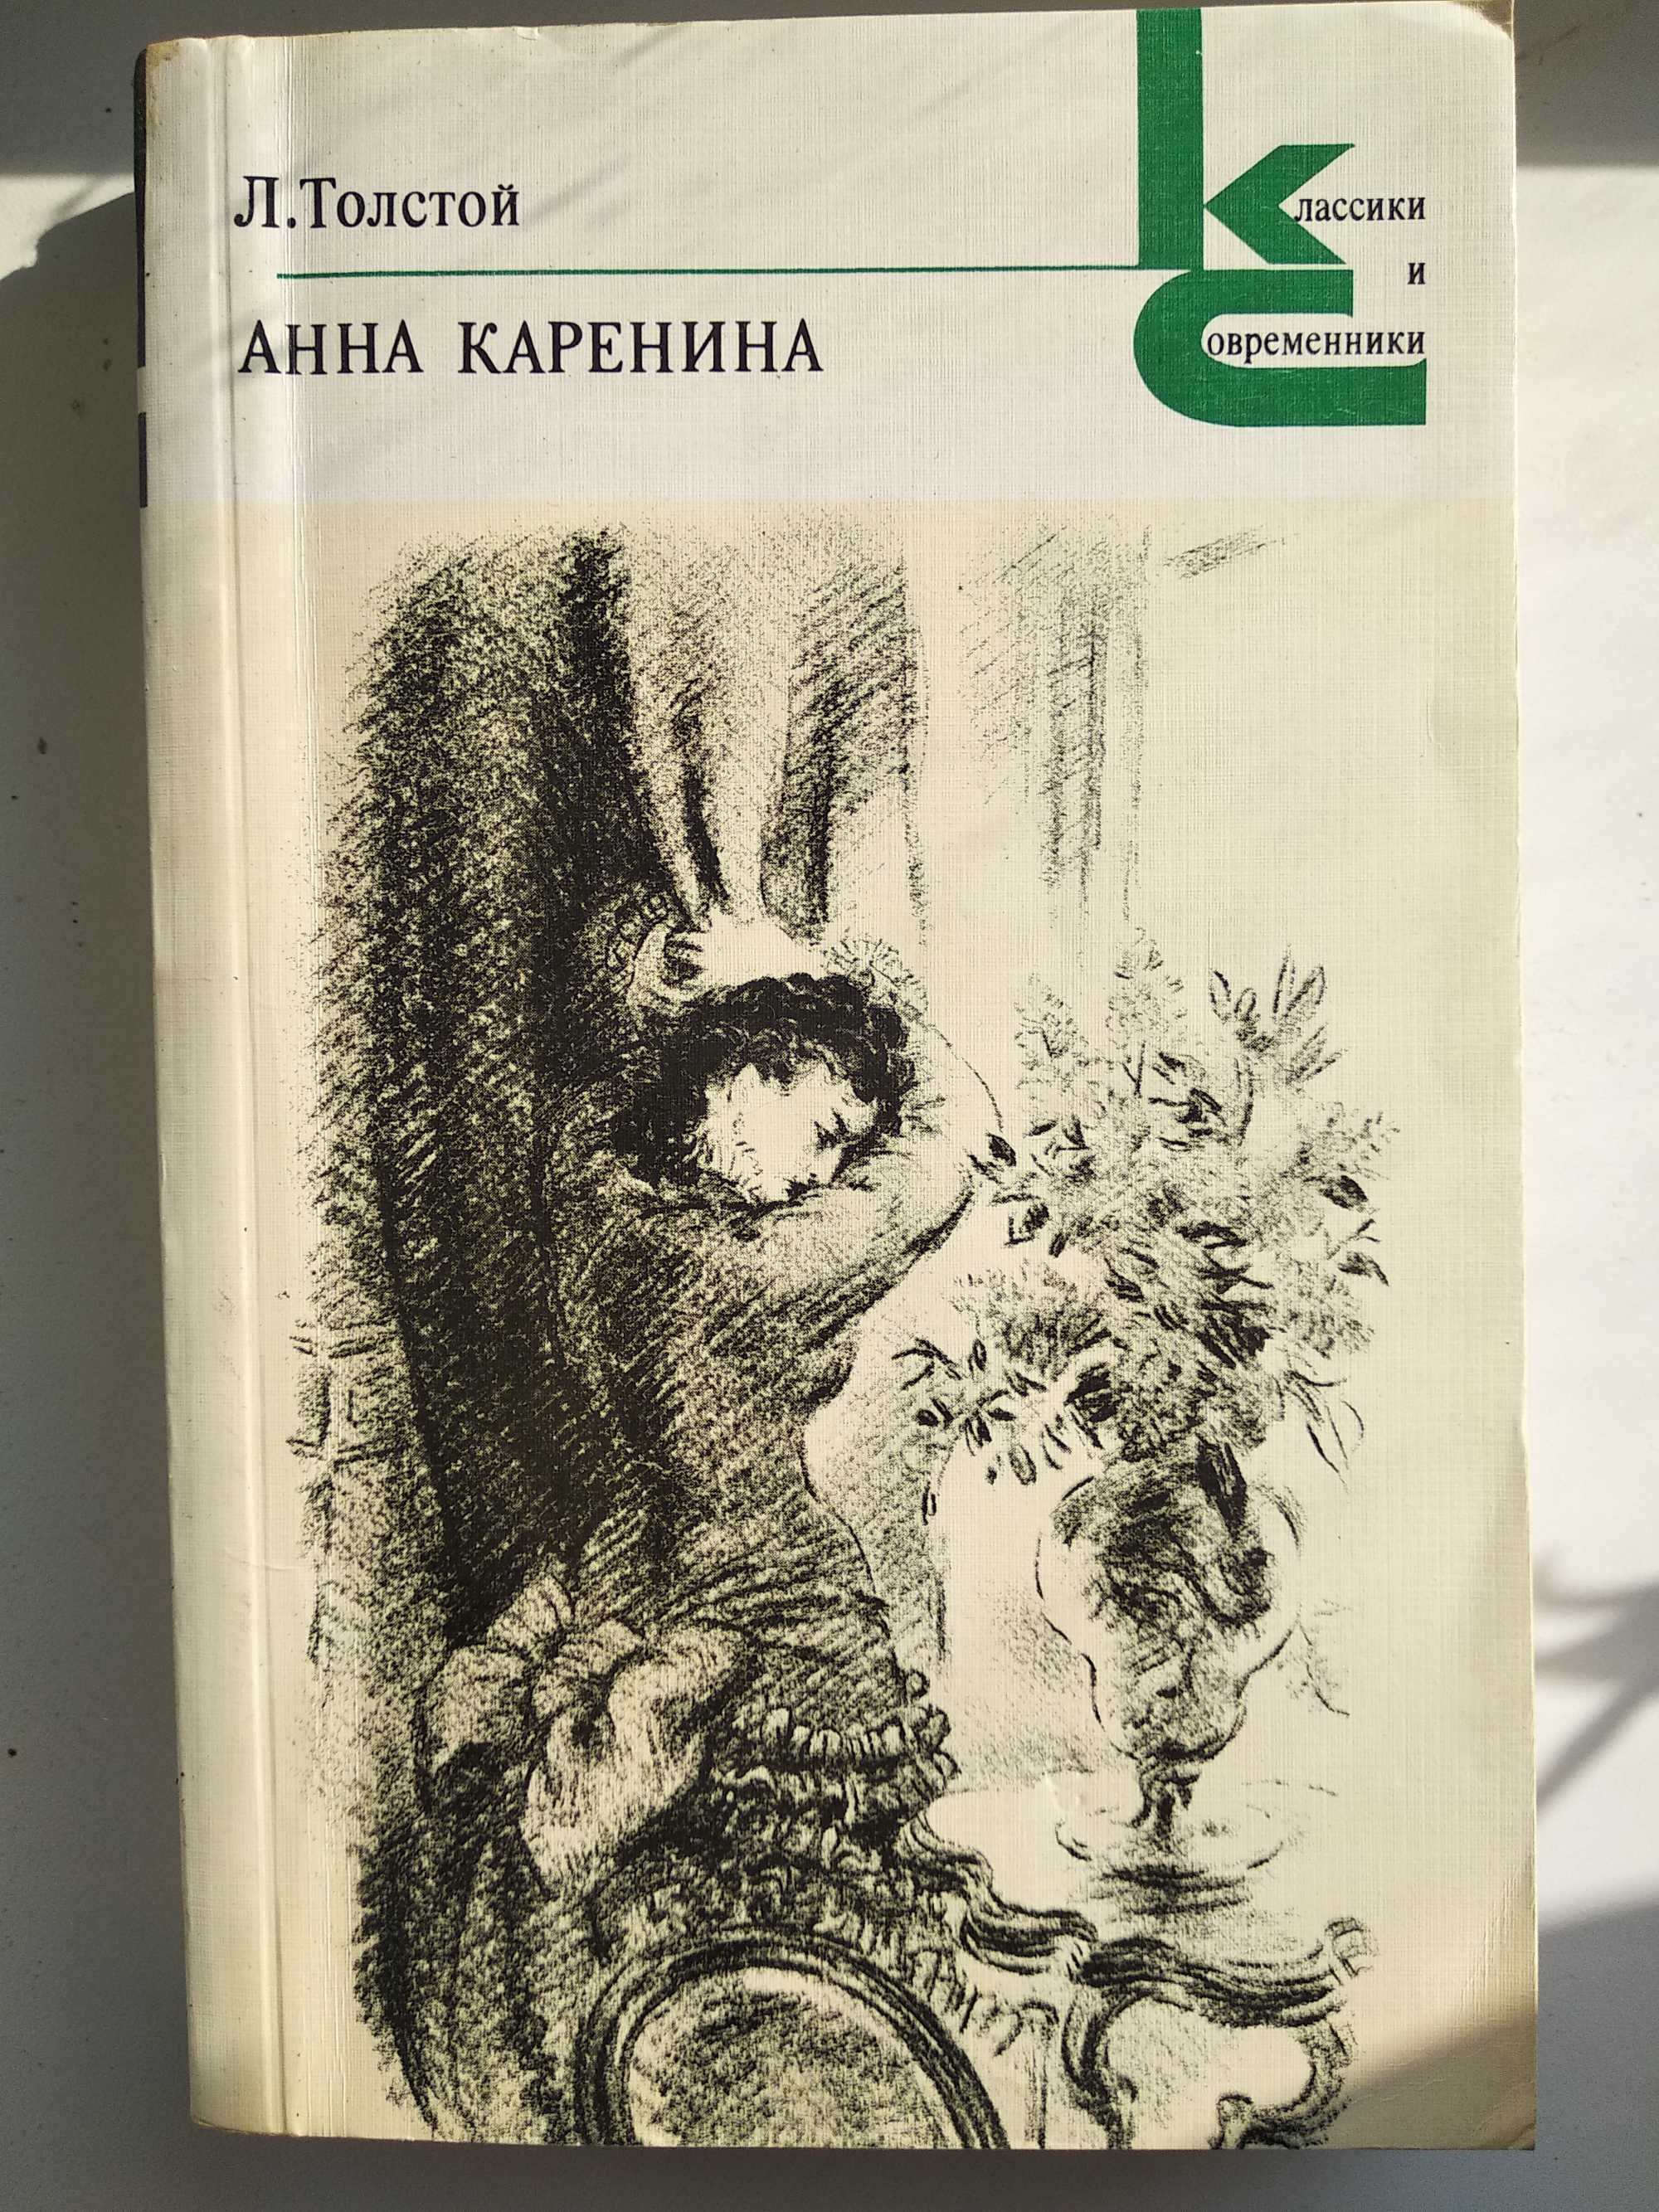 Книга Анна Каренина (1979 год)